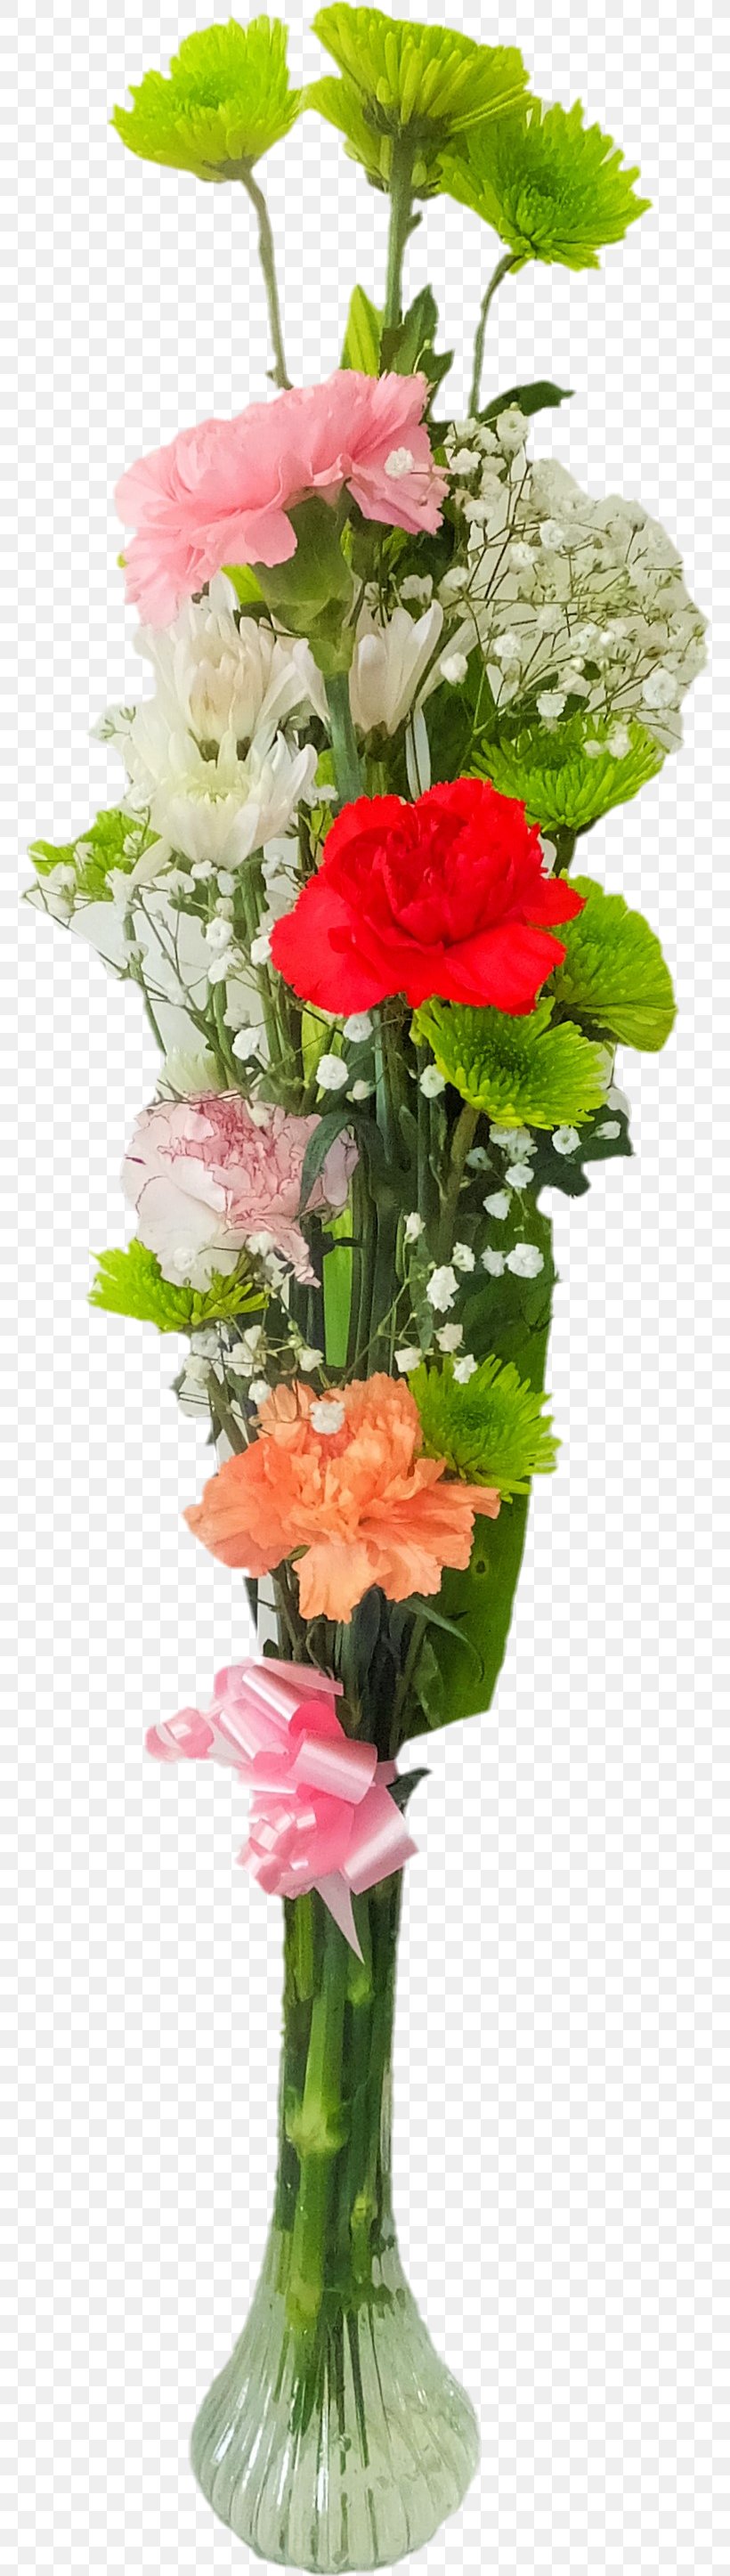 Garden Roses Floral Design Cut Flowers Flower Bouquet, PNG, 780x2893px, Garden Roses, Artificial Flower, Cut Flowers, Family, Floral Design Download Free